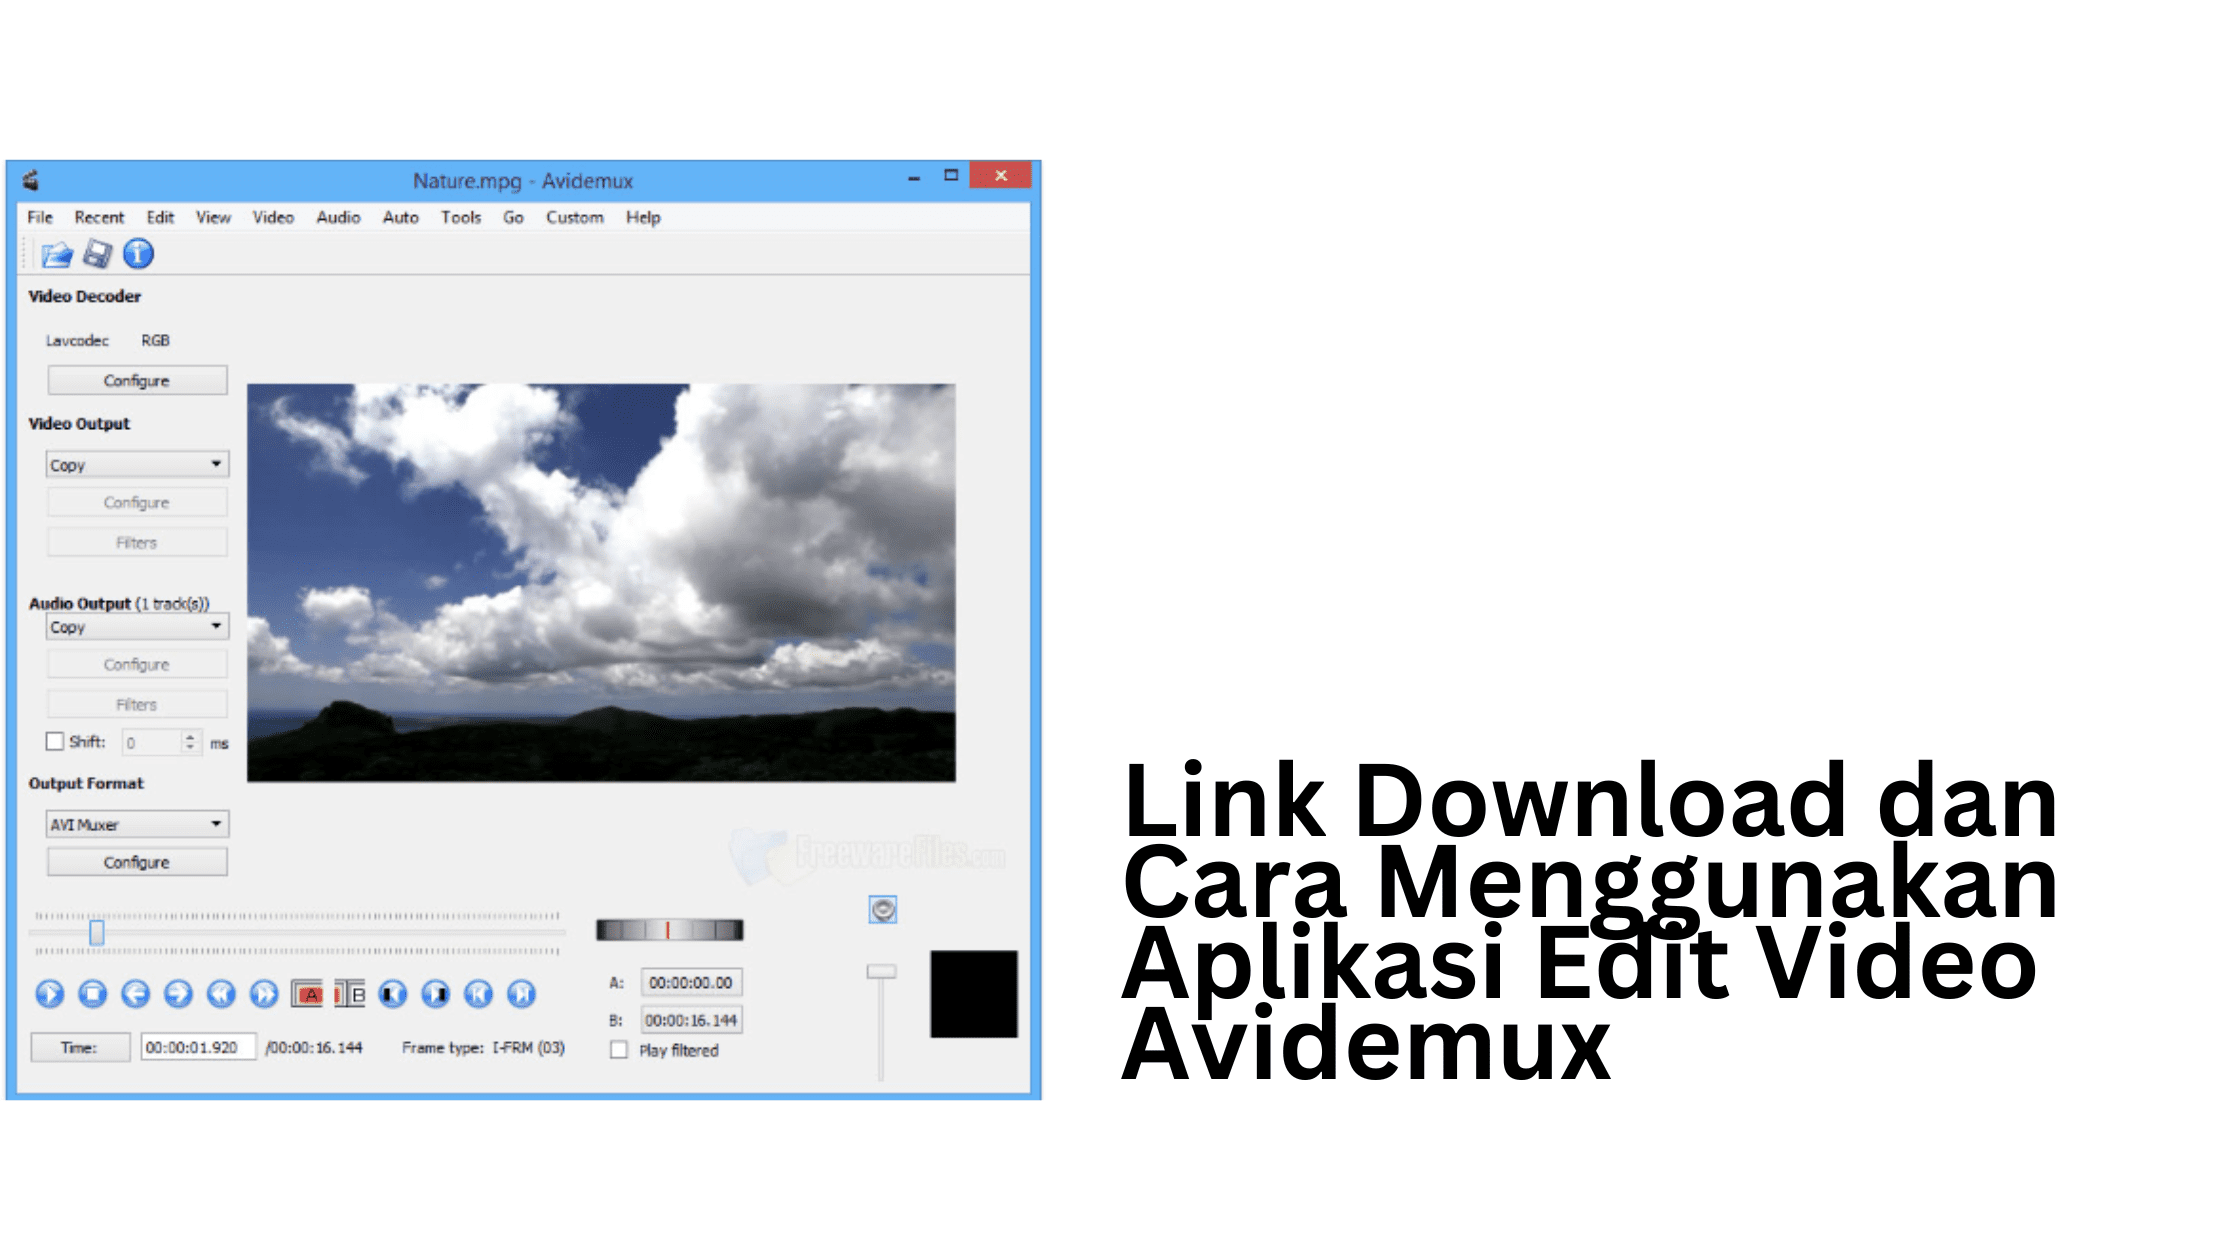 Link Download dan Cara Menggunakan Aplikasi Edit Video Avidemux